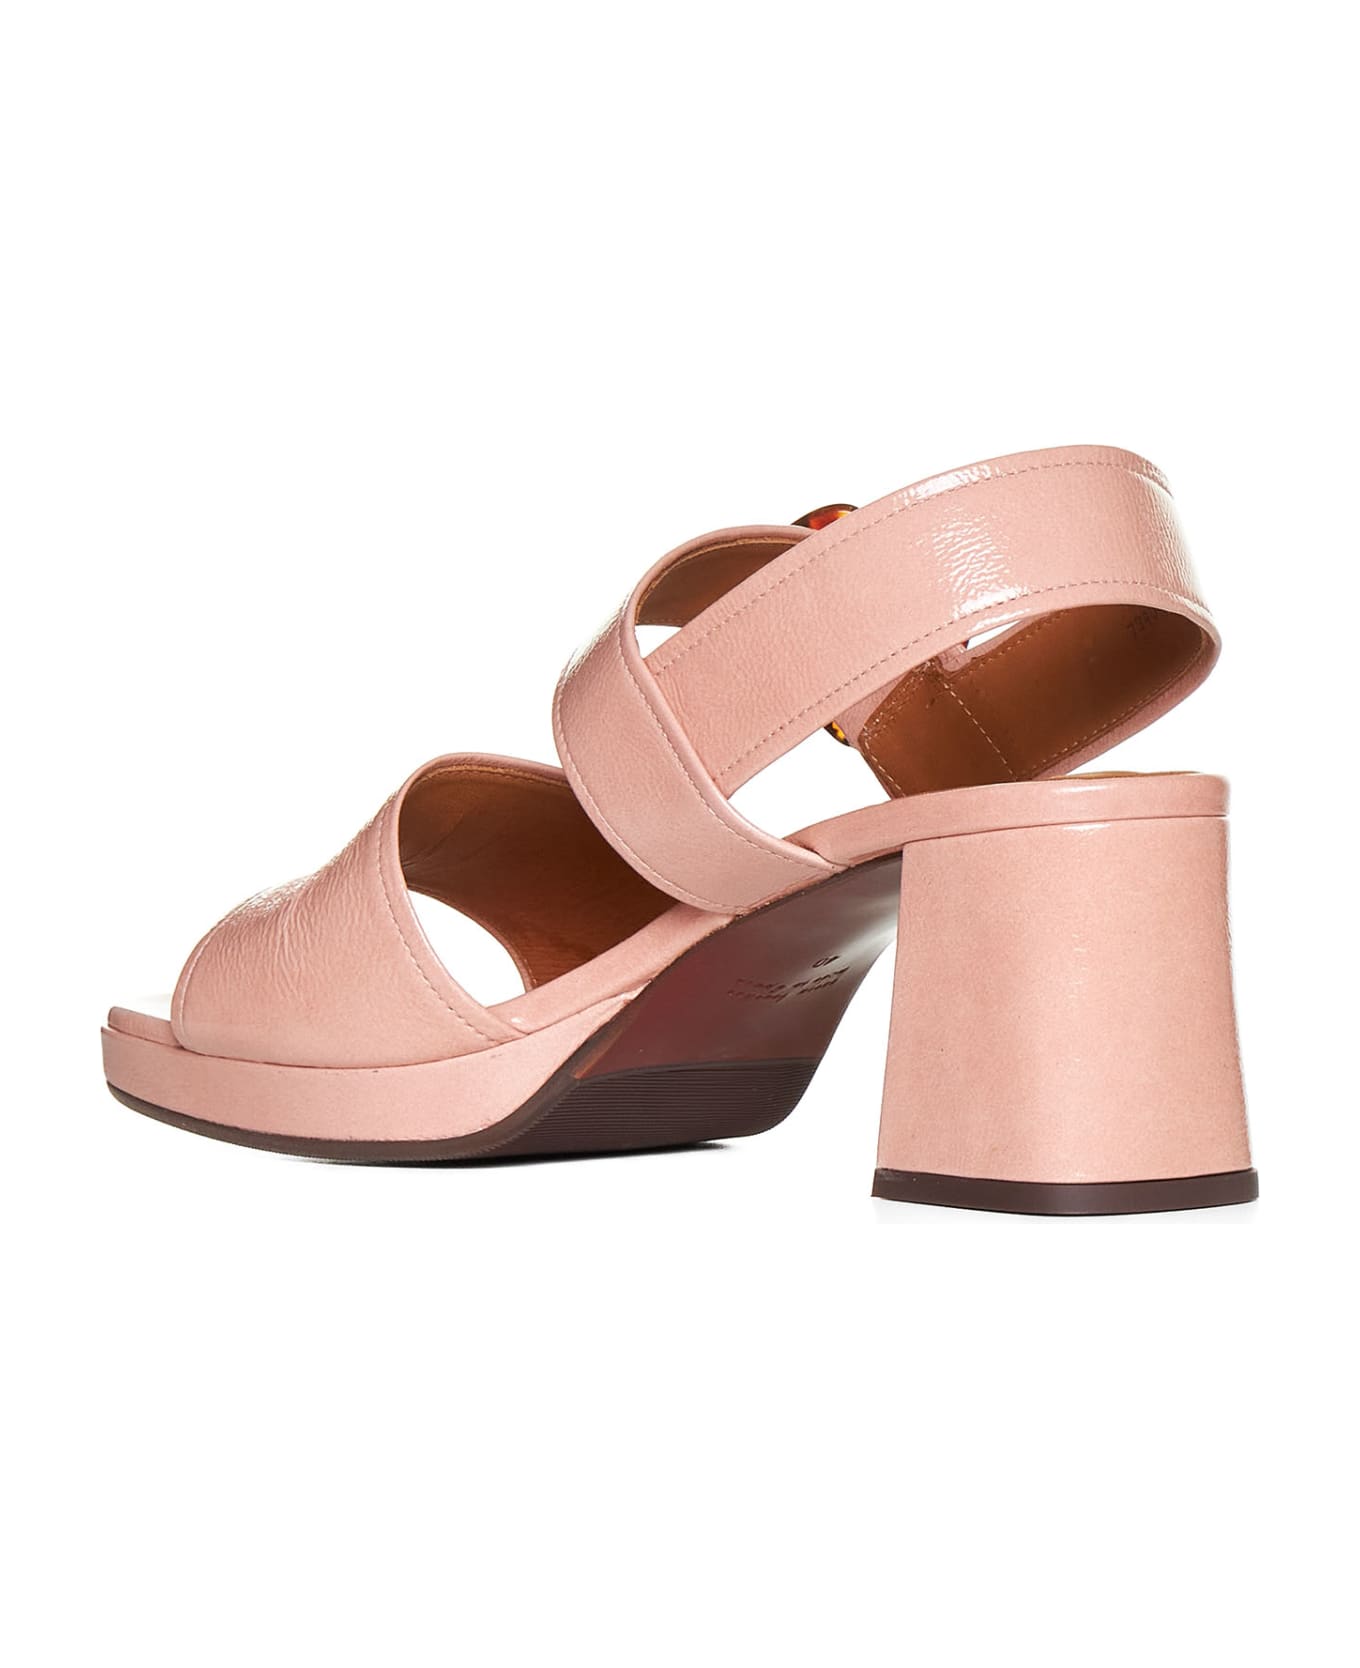 Chie Mihara Sandals - Ferrari pink サンダル